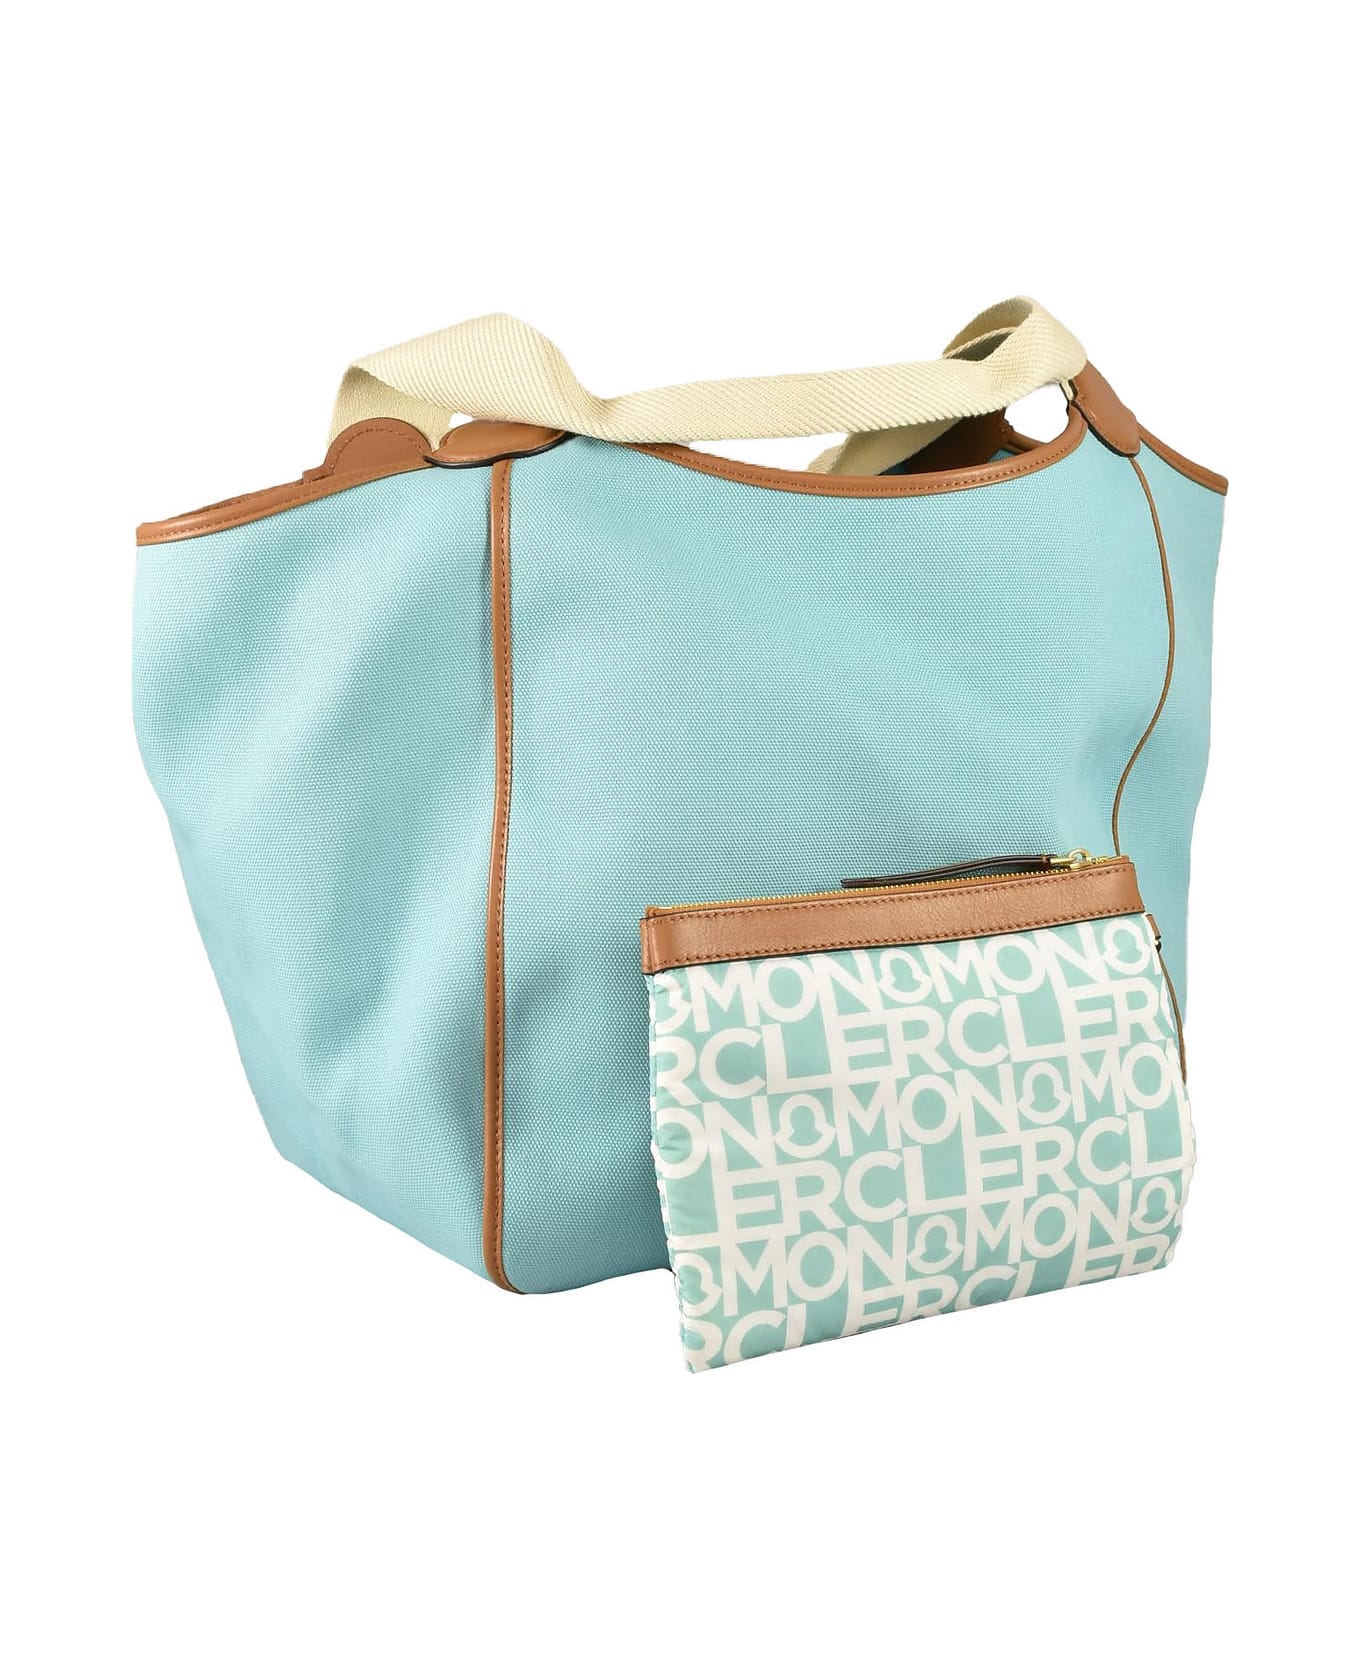 Moncler Women's Aqua Handbag - Aqua